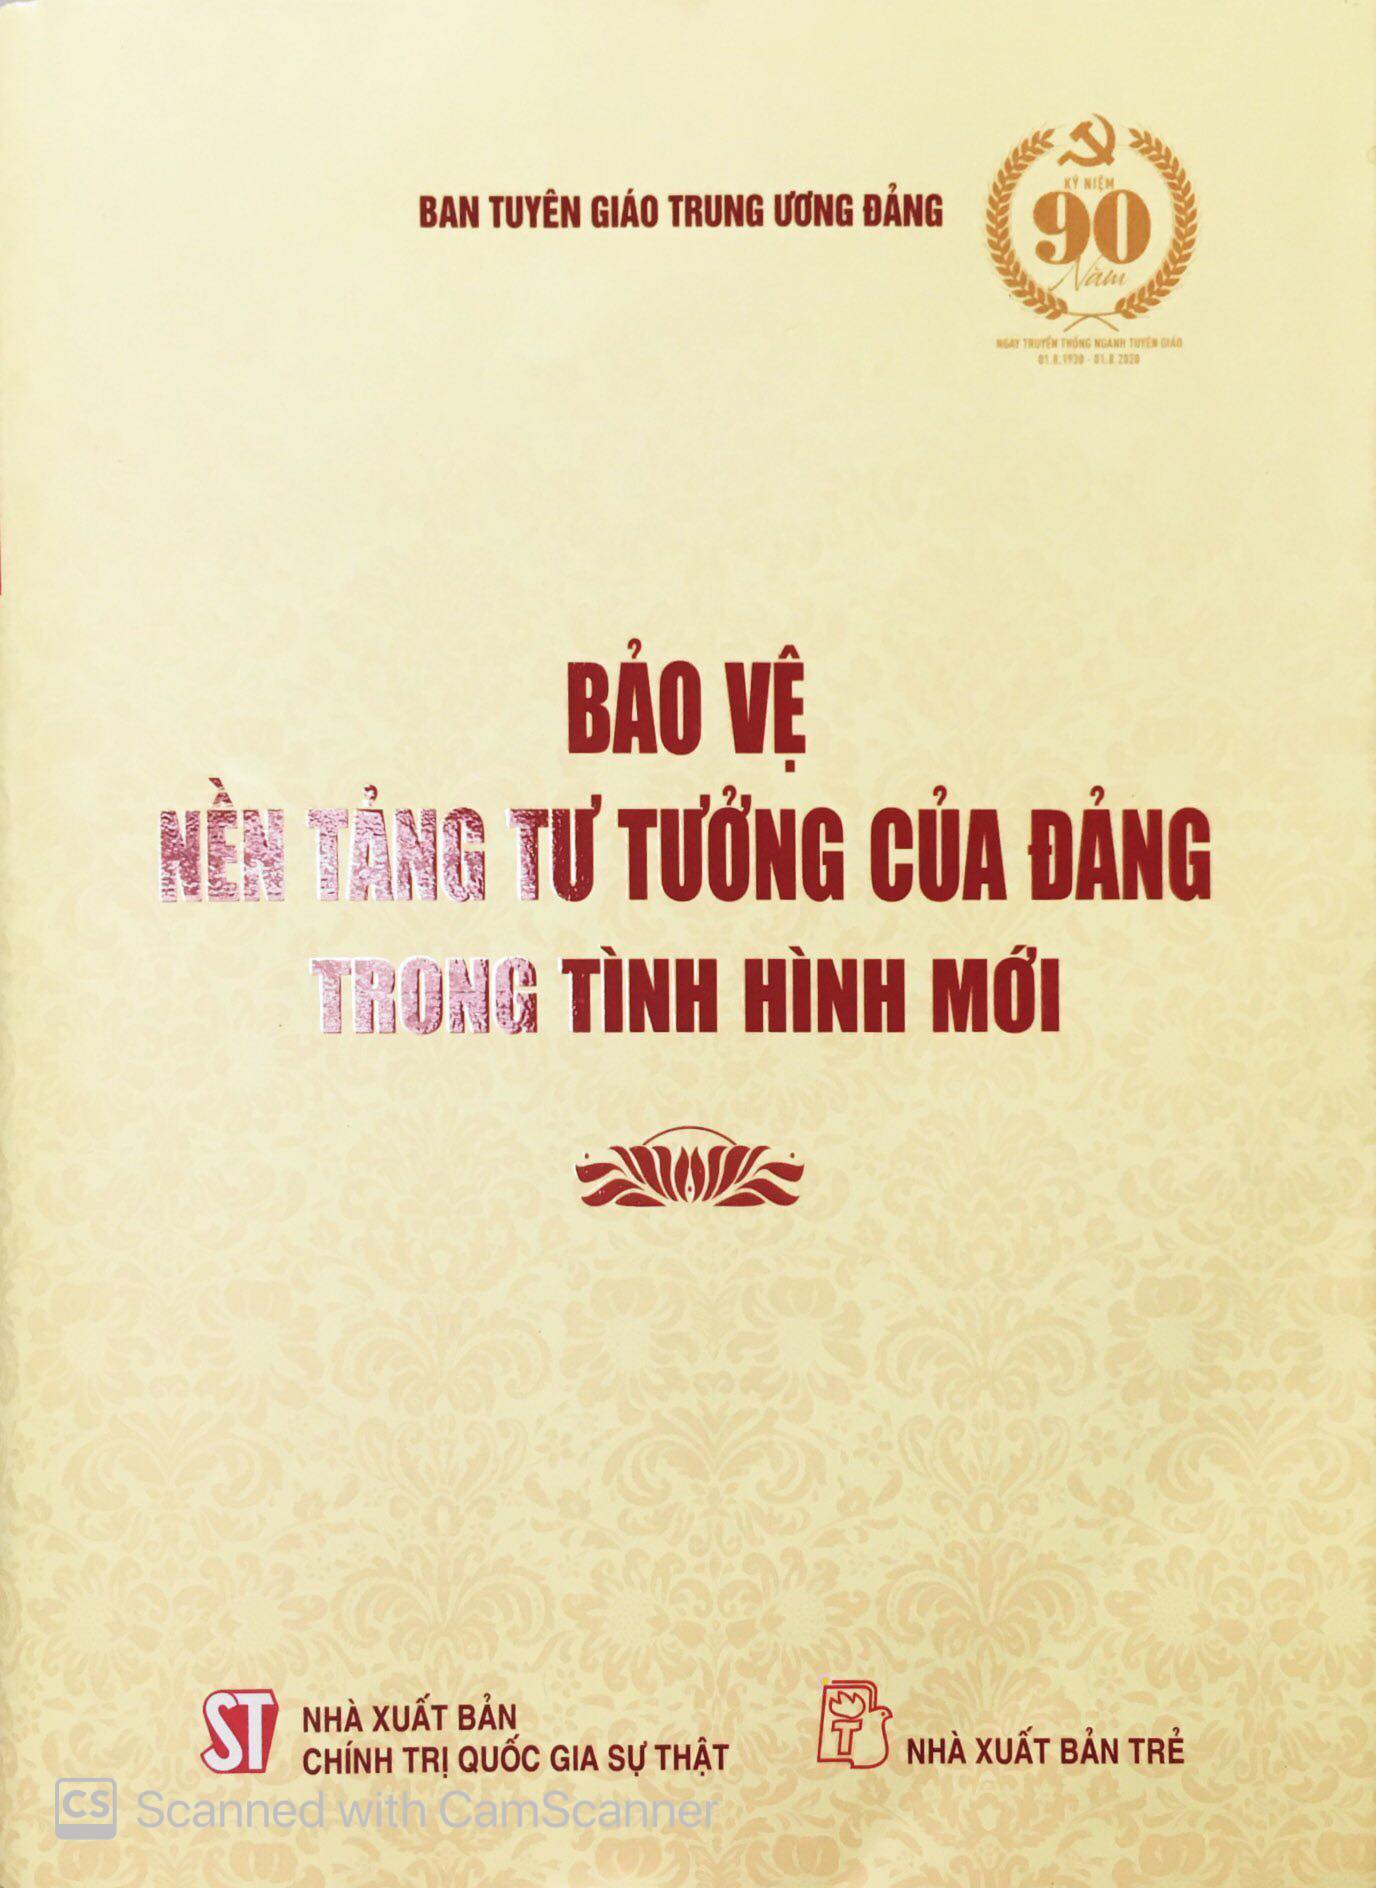 Trao giải Cuộc thi viết về bảo vệ nền tảng tư tưởng của Đảng  Chính trị   Vietnam VietnamPlus